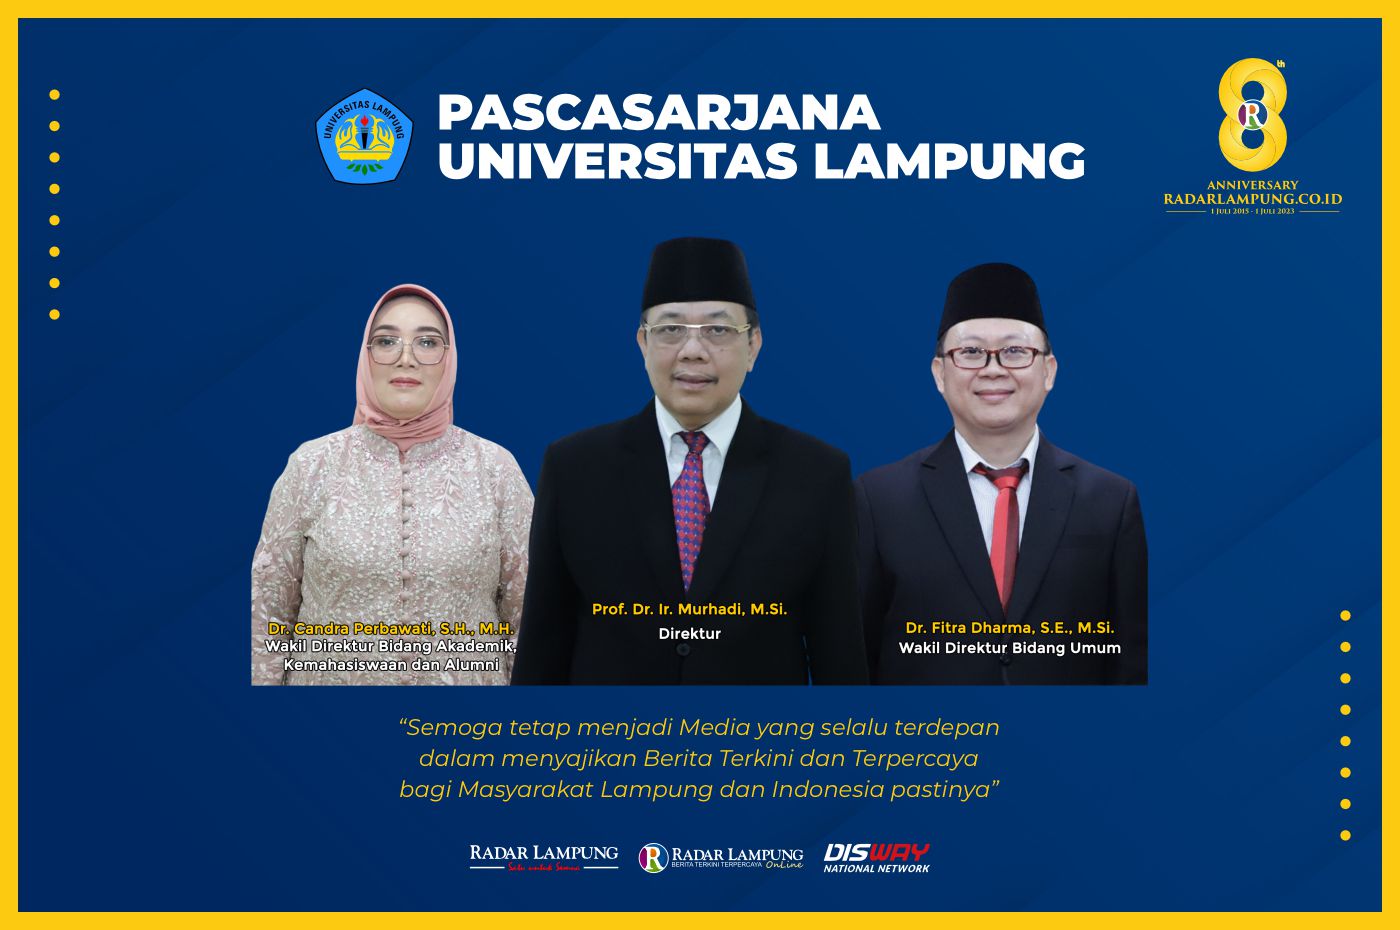 Pascasarjana Universitas Lampung: Selamat dan Sukses HUT ke 8 Radar Lampung Online